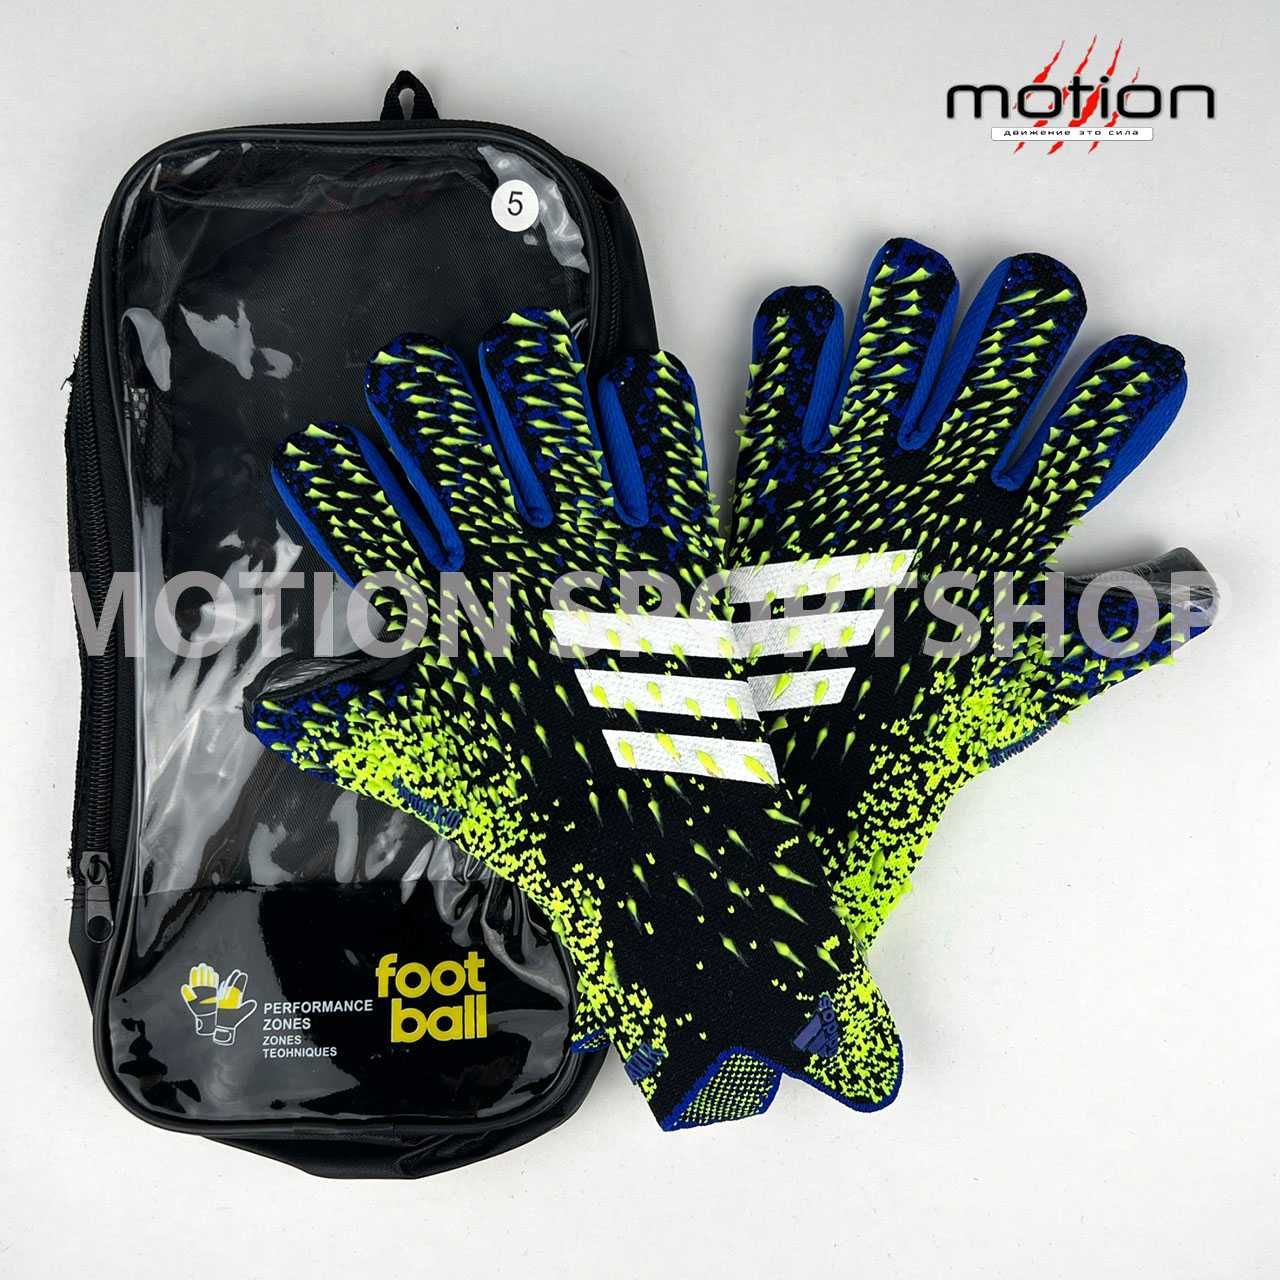 Вратарские перчатки Adidas Predator бюджетный вариант, красный/синий